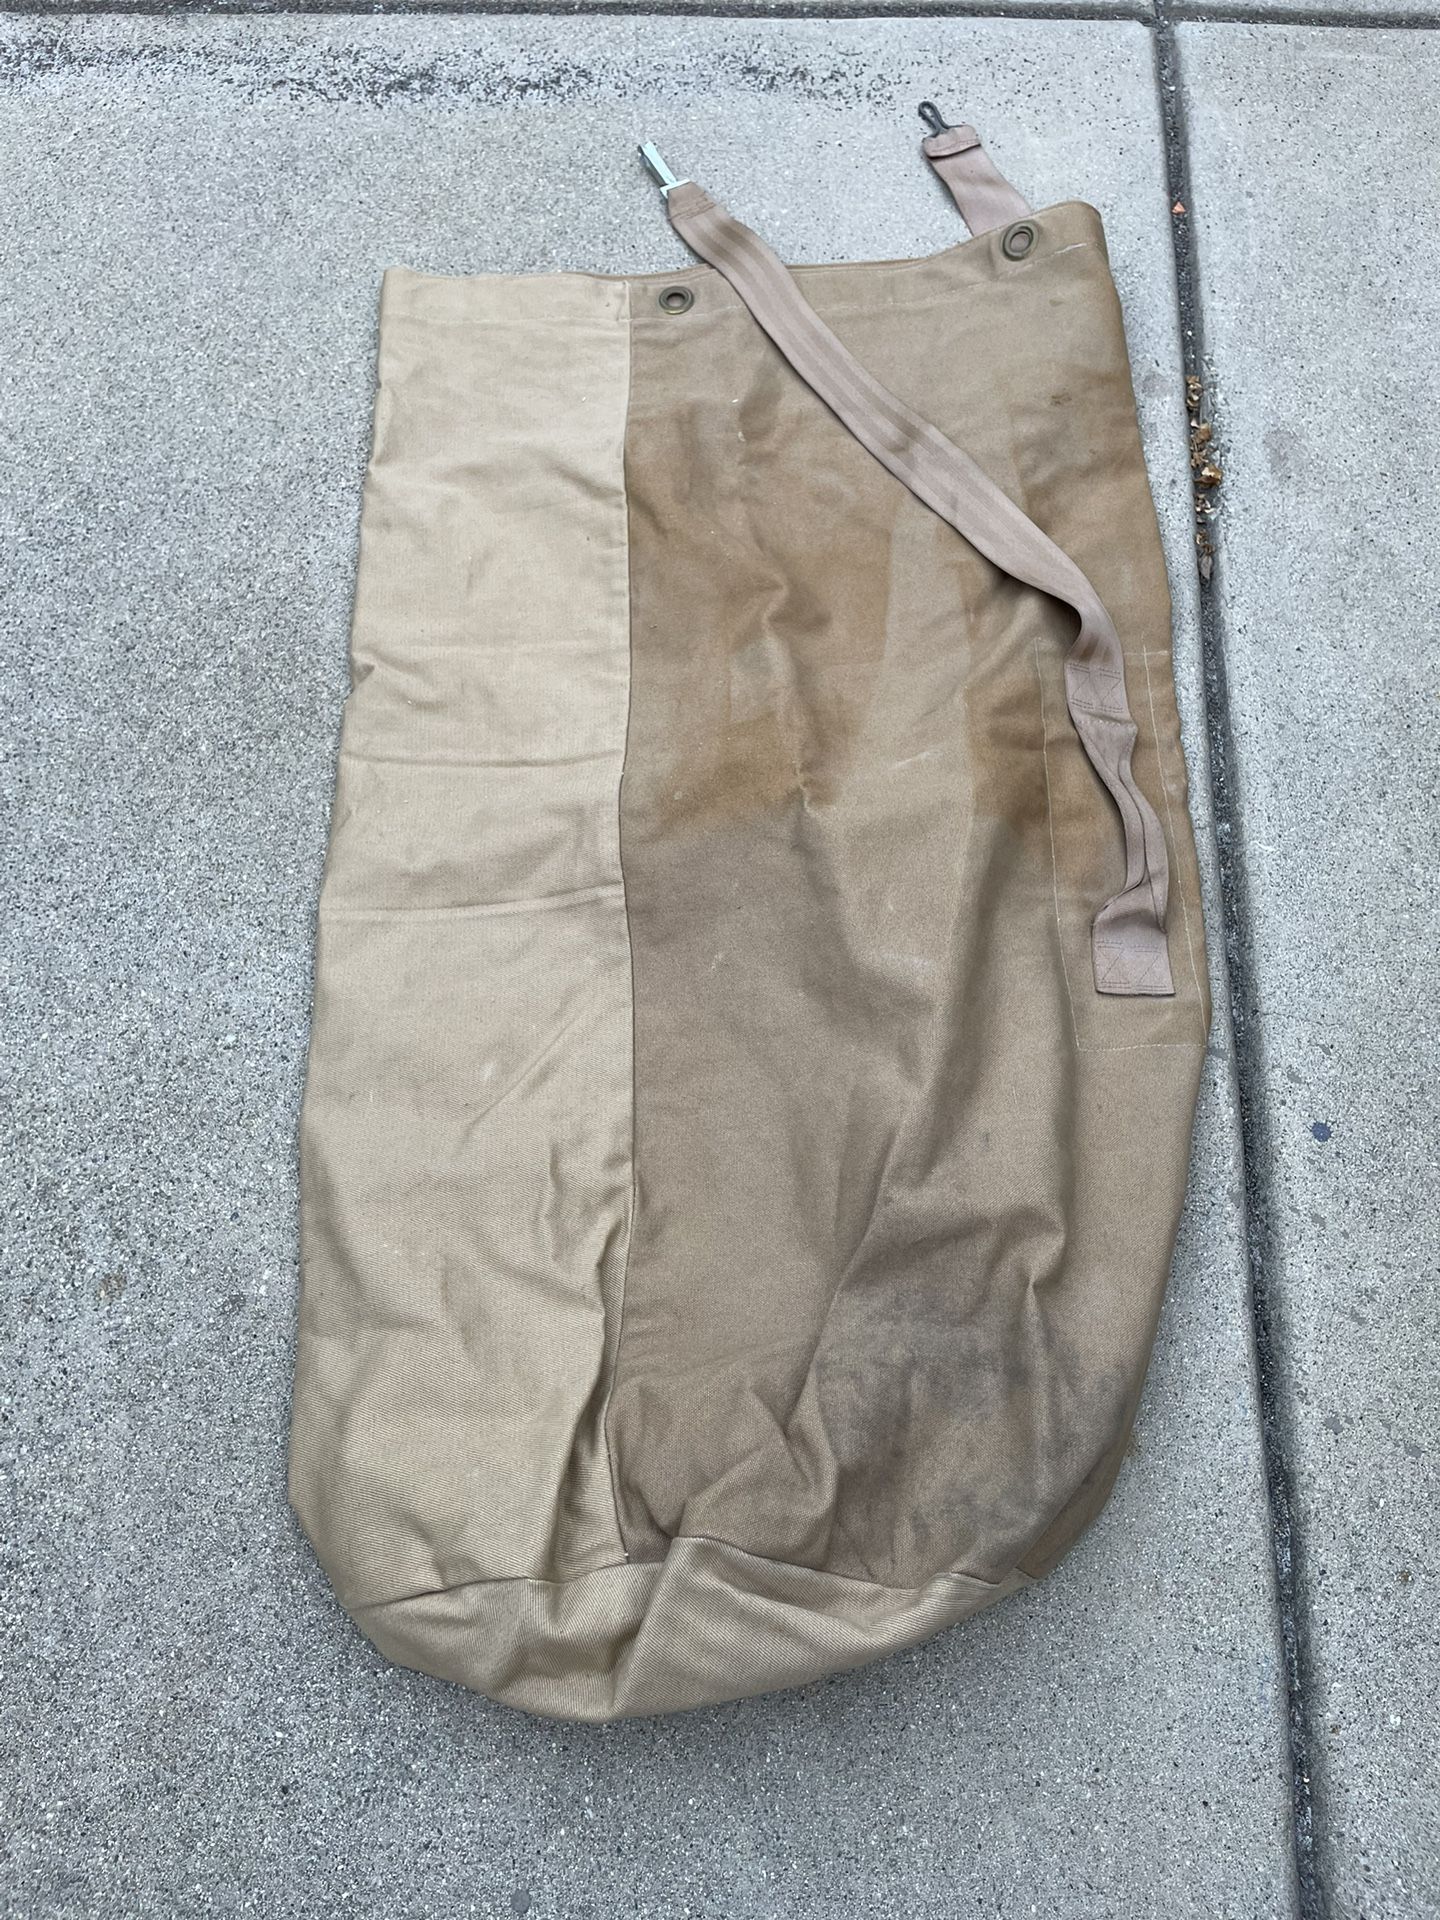 Vintage Army Brown/Tan Army Duffle Bag